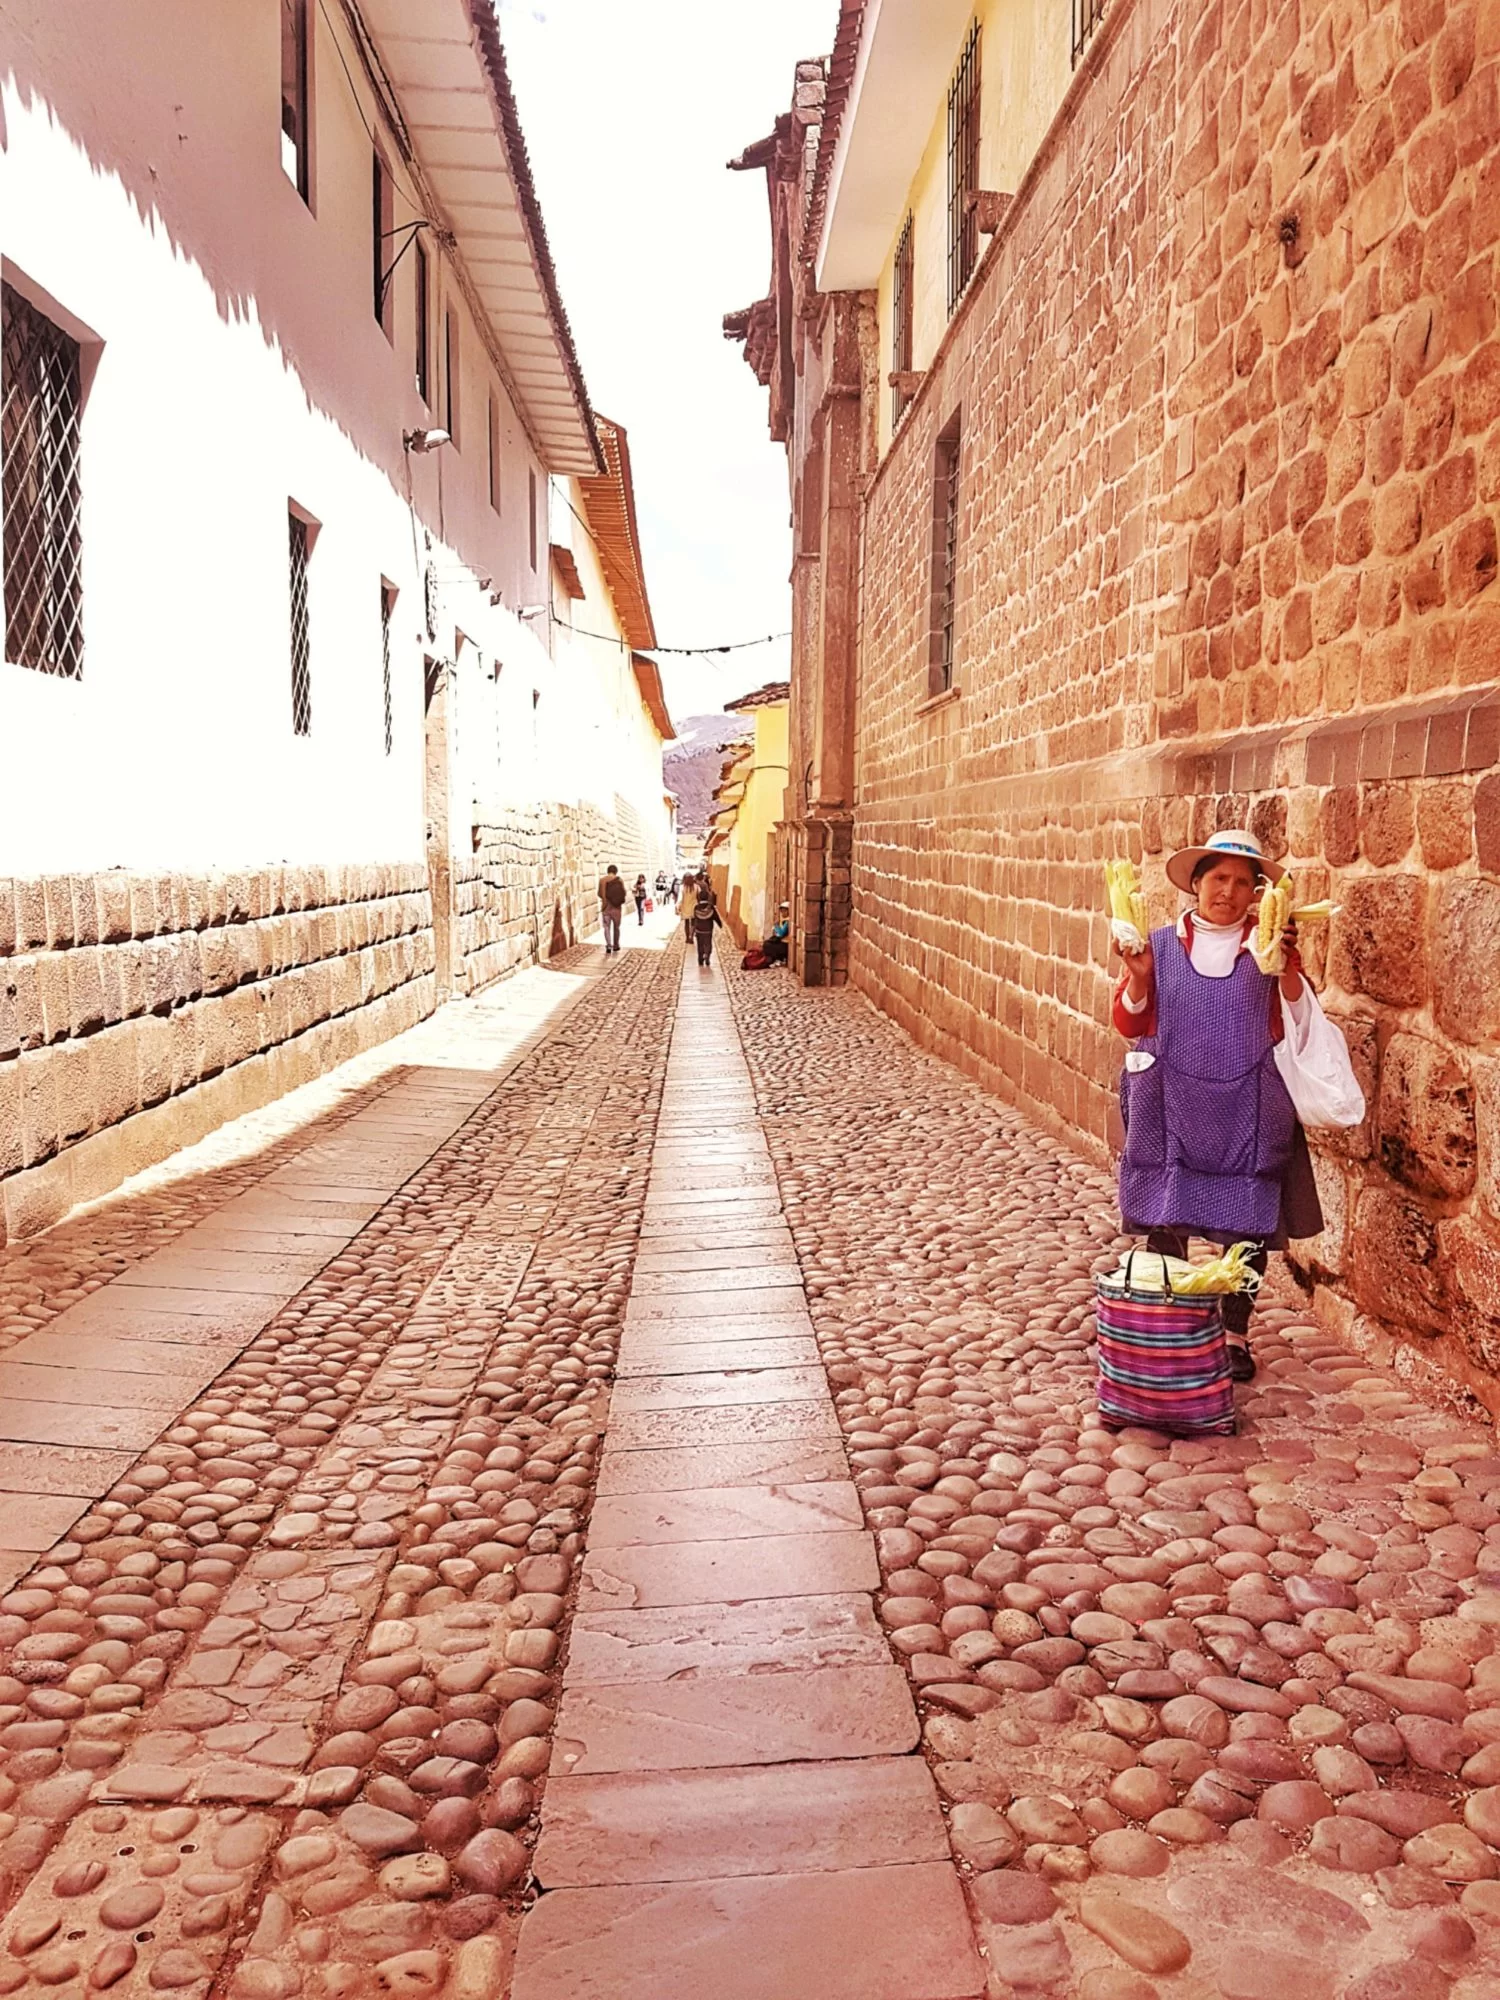 Peru: Our Quick Budget Guide to Cusco City